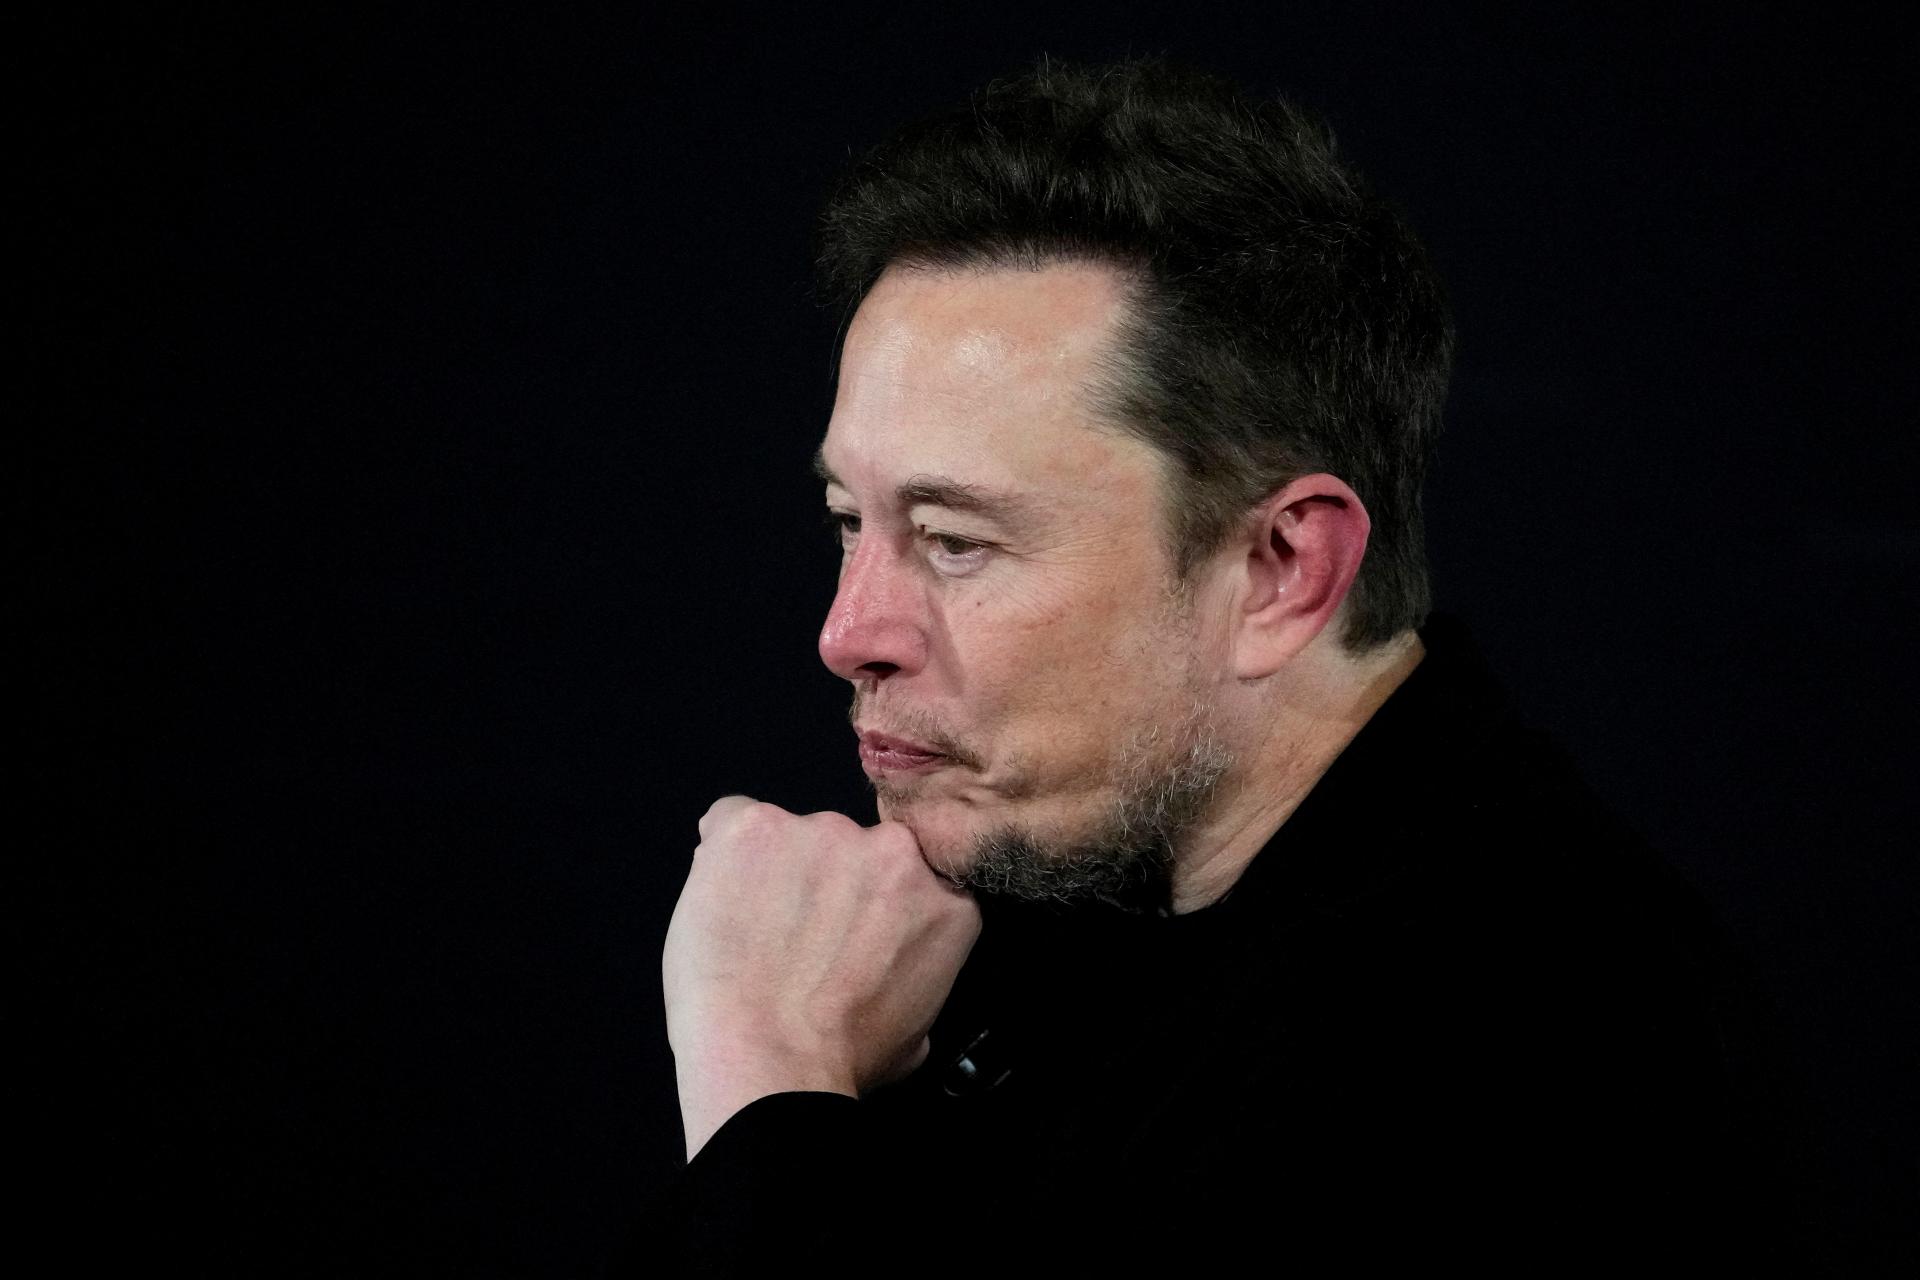 Firmy kvôli antisemitizmu pozastavujú reklamu na sieti X, Musk chystá žalobu